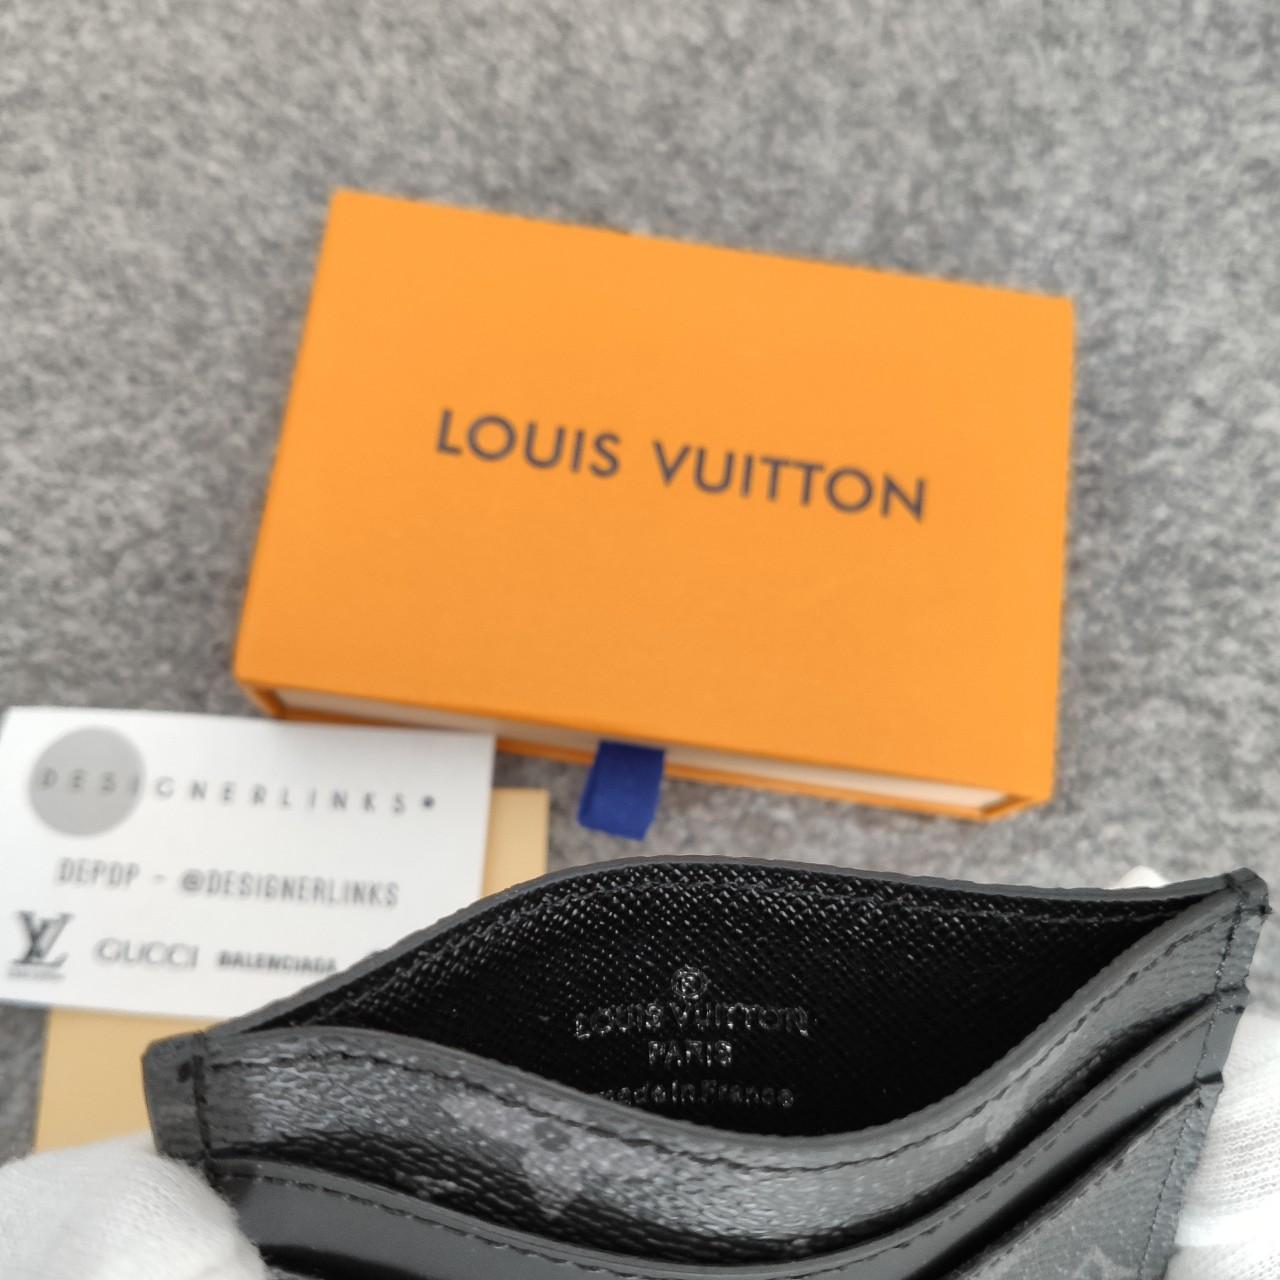 Louis Vuitton Romy card holder in armagnac Brown, - Depop